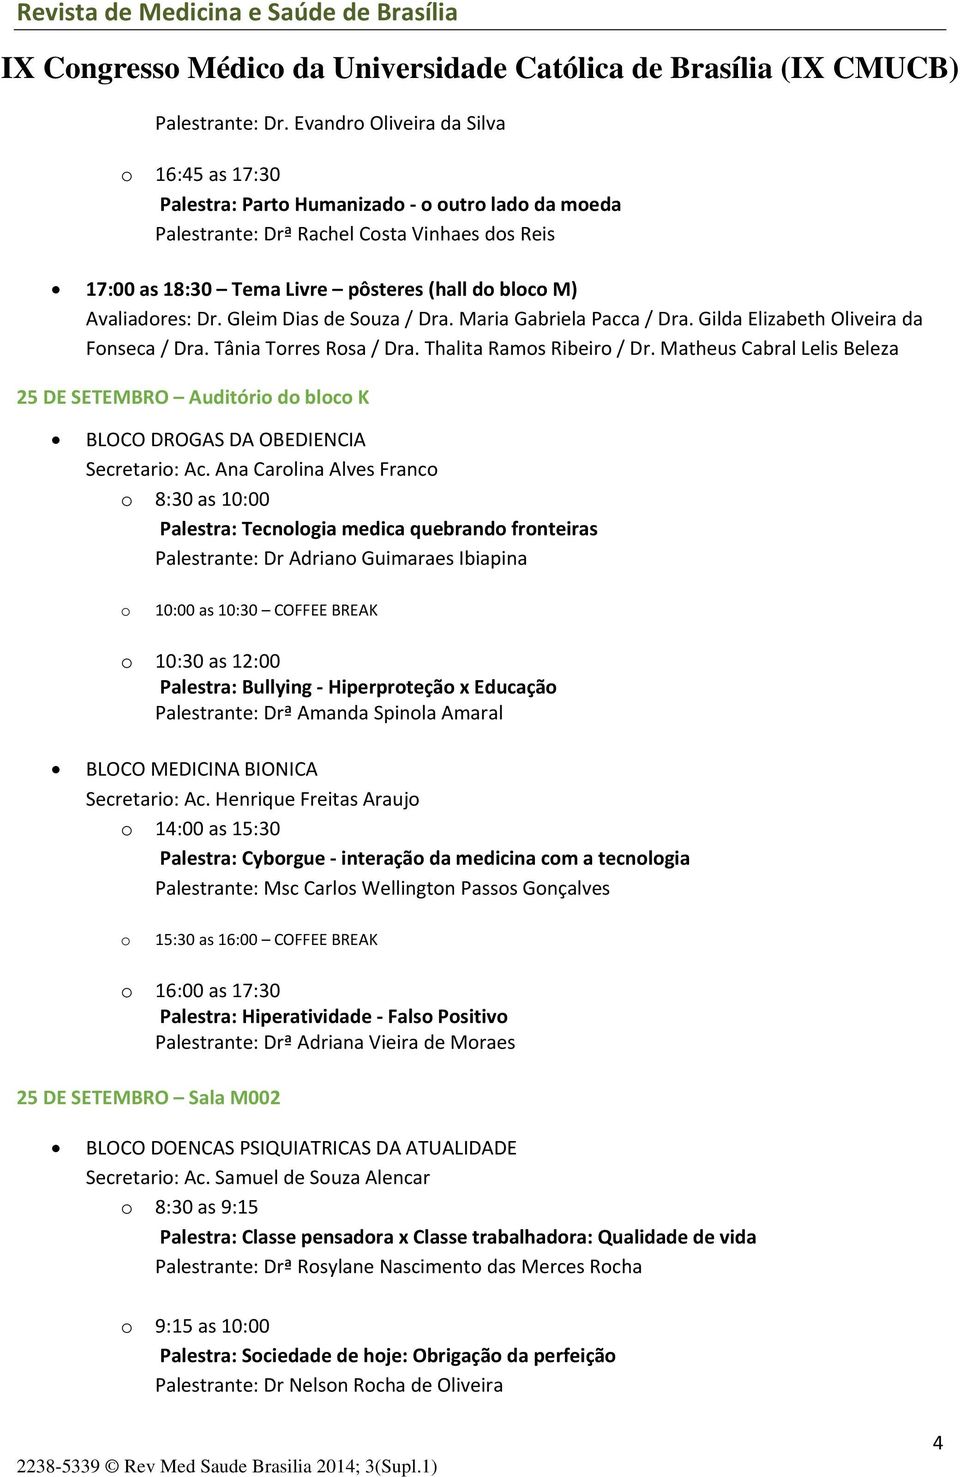 Avaliadores: Dr. Gleim Dias de Souza / Dra. Maria Gabriela Pacca / Dra. Gilda Elizabeth Oliveira da Fonseca / Dra. Tânia Torres Rosa / Dra. Thalita Ramos Ribeiro / Dr.